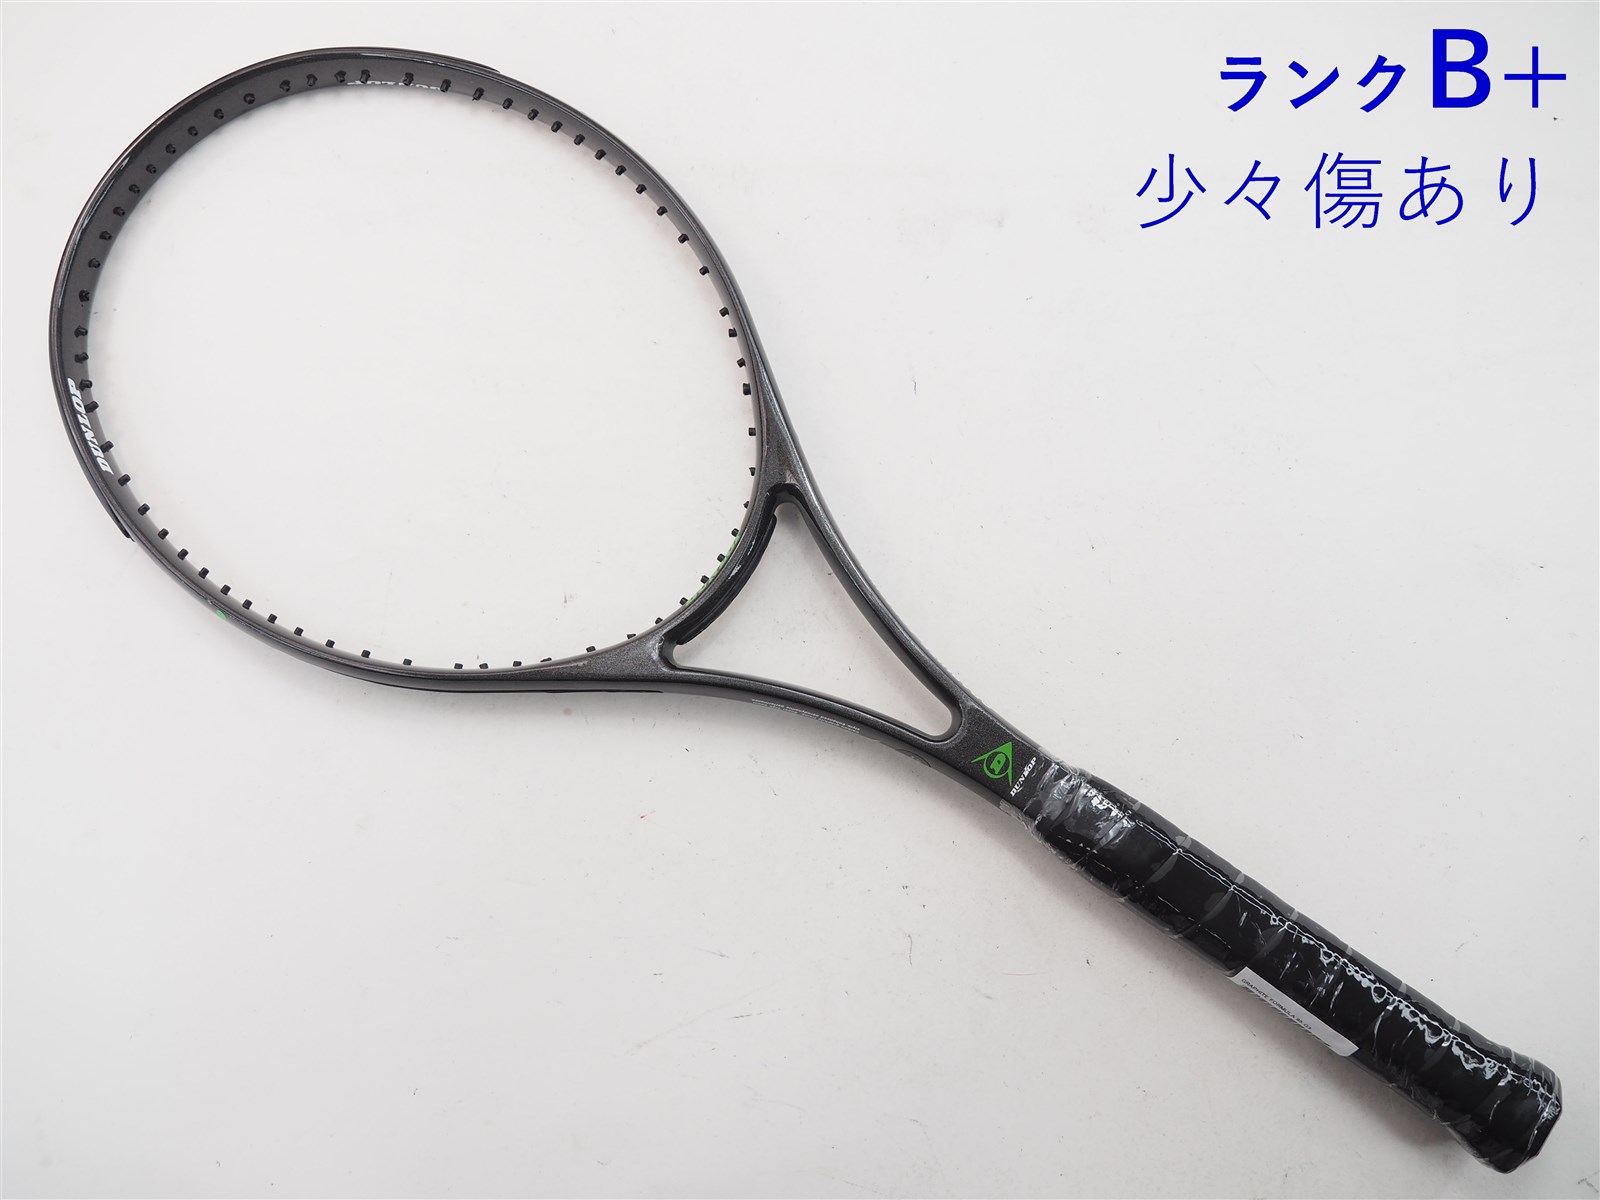 中古】ダンロップ グラファイト フォーミュラ 95DUNLOP GRAPHITE FORMULA 95(G3)【中古 テニスラケット】【送料無料】の通販・販売|  ダンロップ| テニスサポートセンターへ